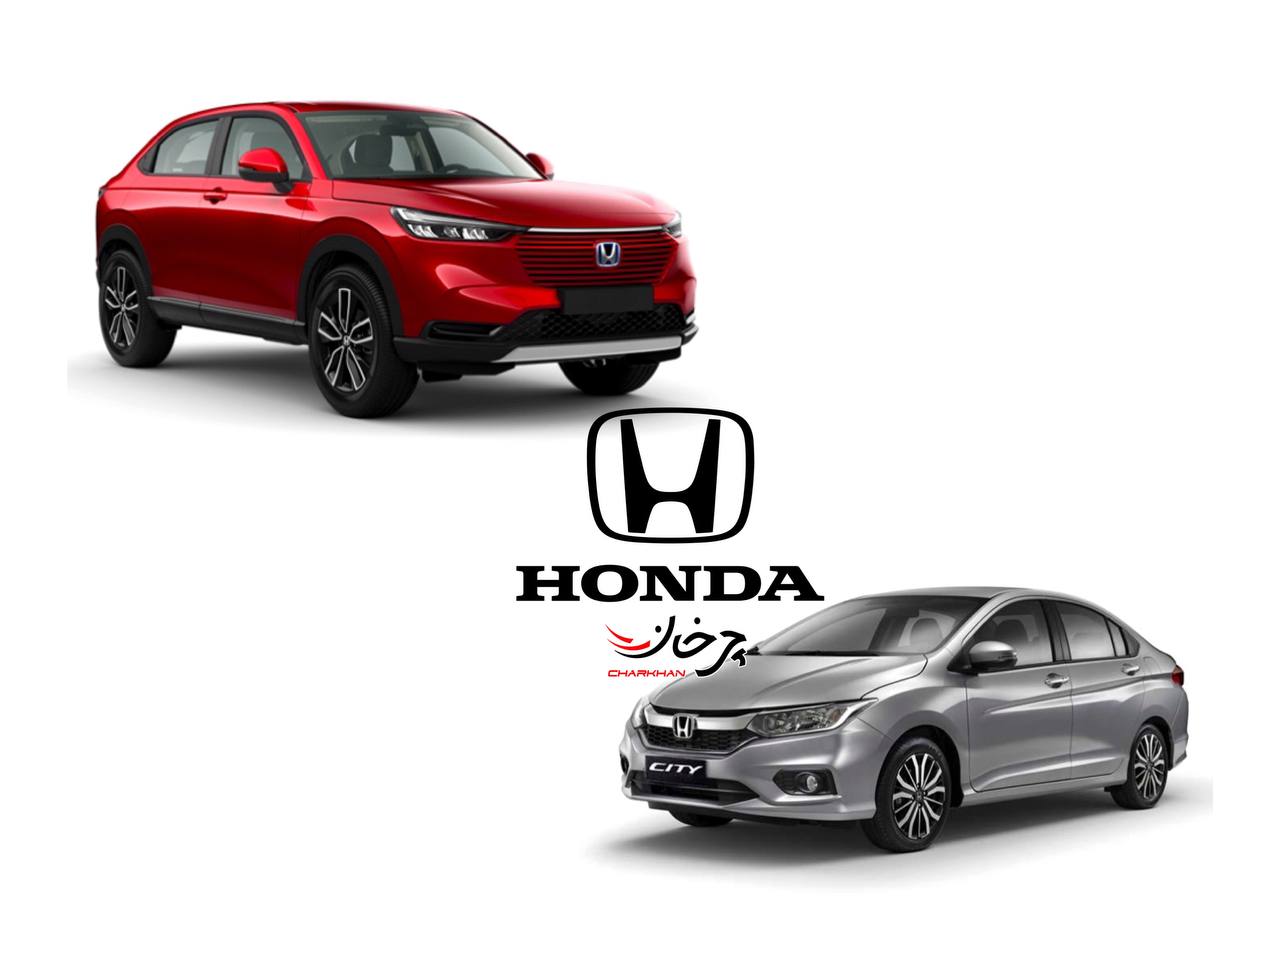 واردات خودروهای هوندا به ایران - HONDA CARS IN IRAN